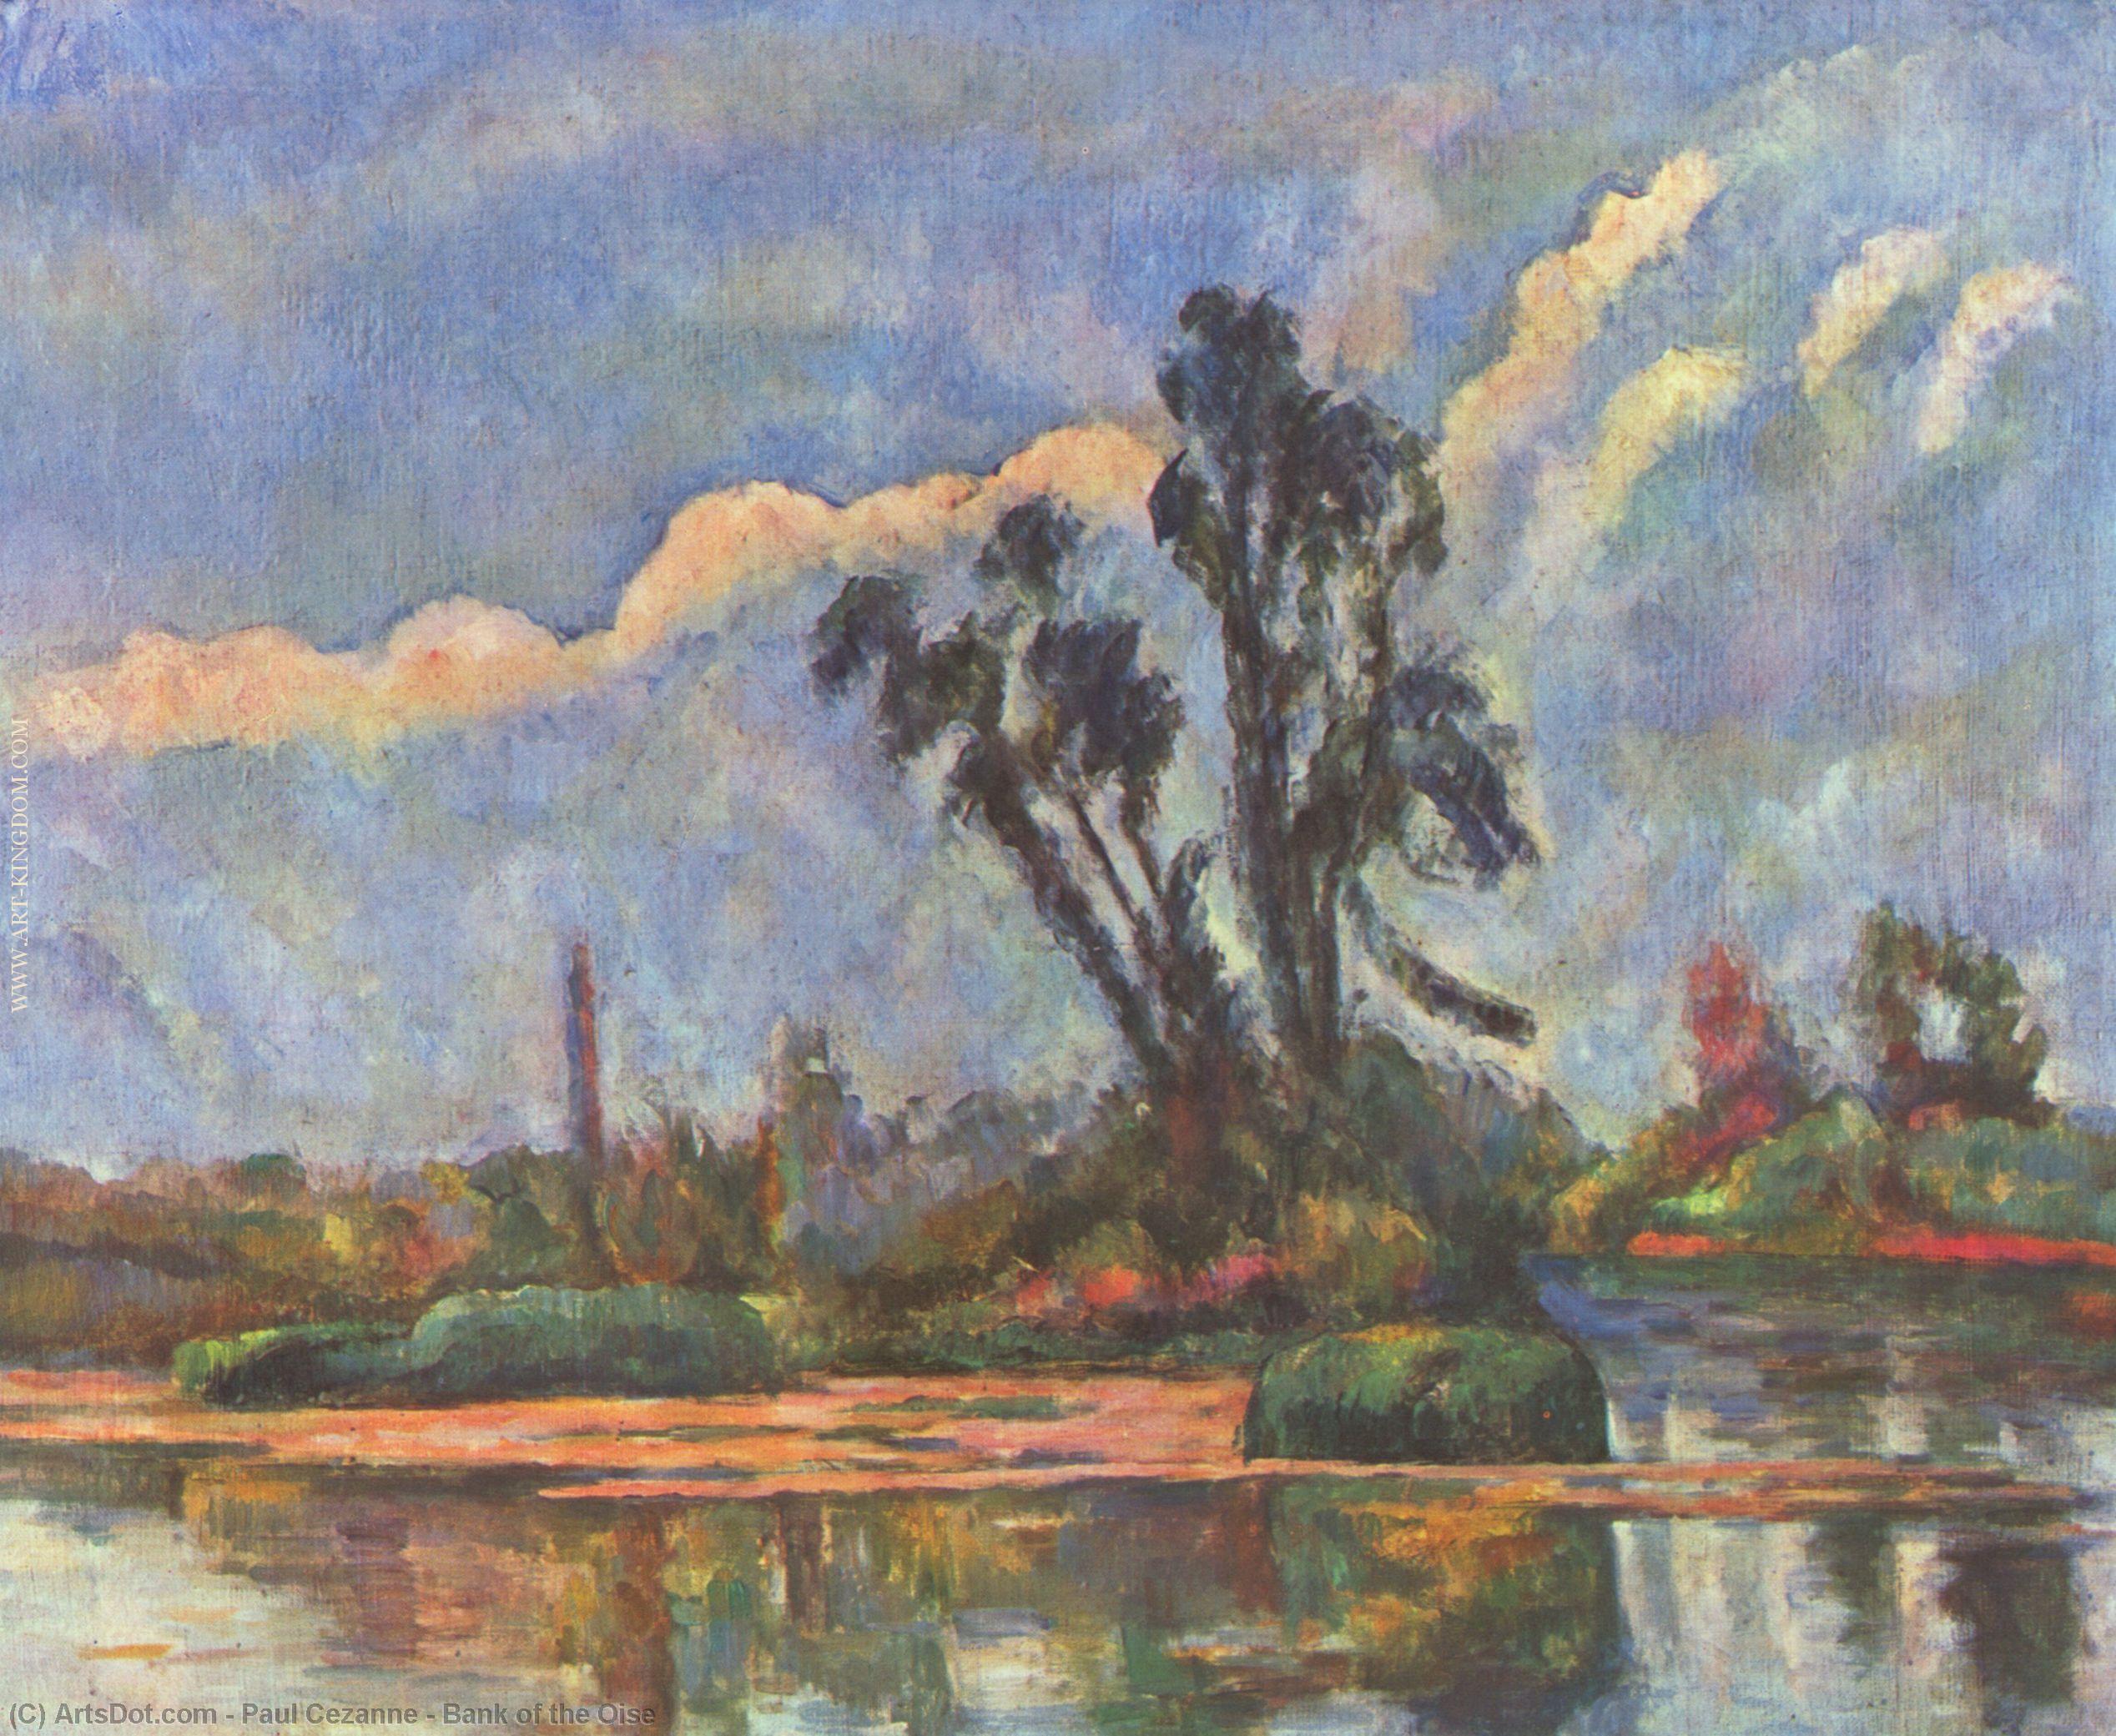 WikiOO.org - Encyclopedia of Fine Arts - Målning, konstverk Paul Cezanne - Bank of the Oise